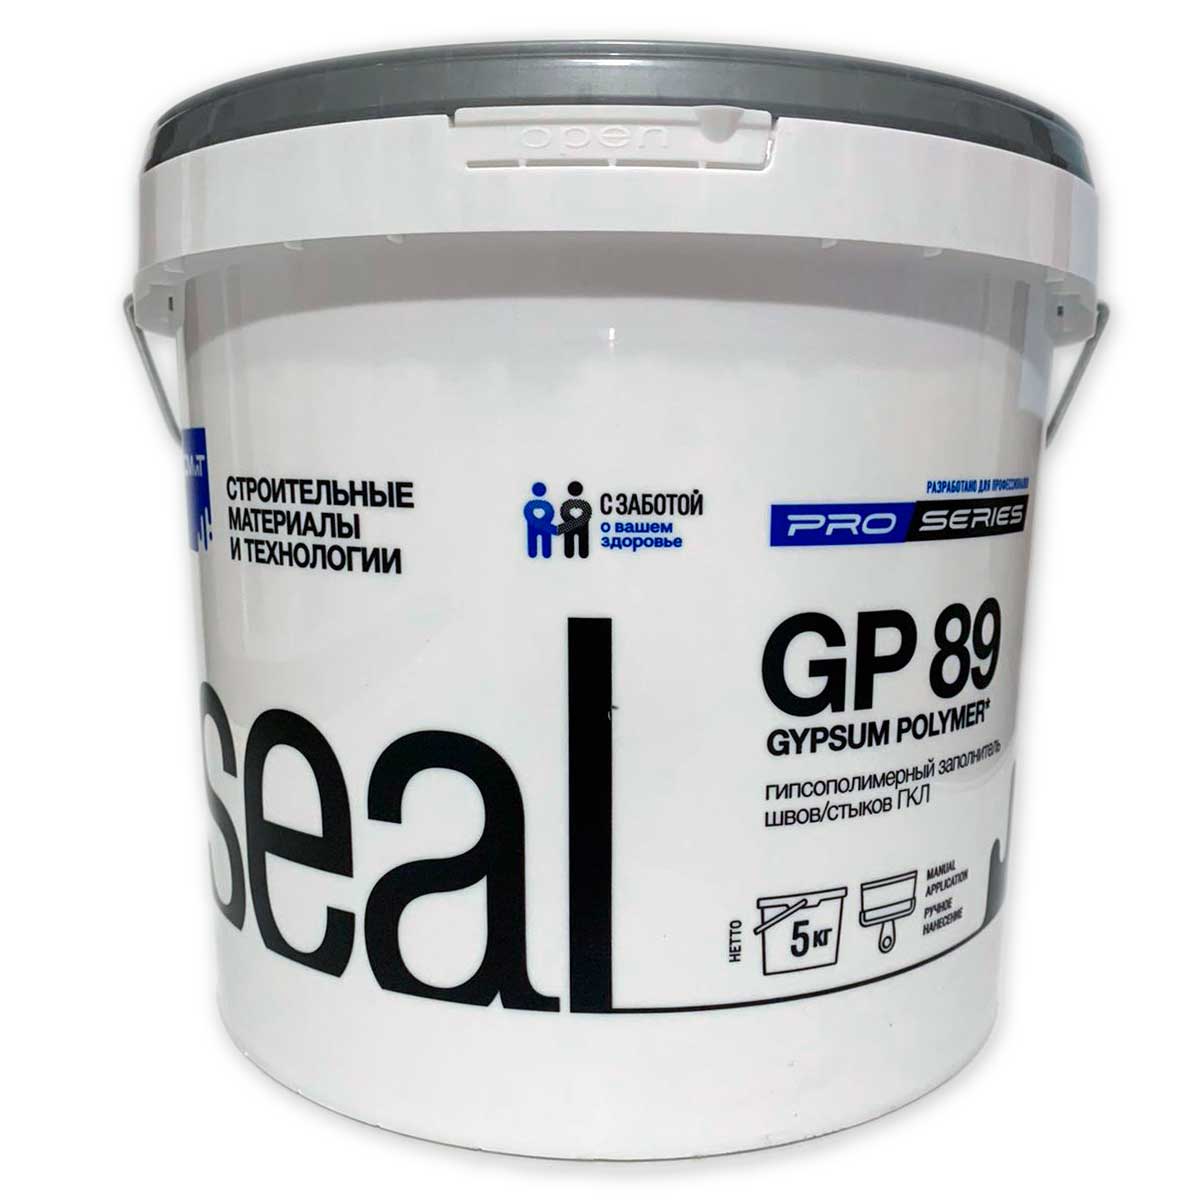 Шпатлевка гипсополимерная СМИТ GP 89 для заделки стыков ГКЛ 5 кг